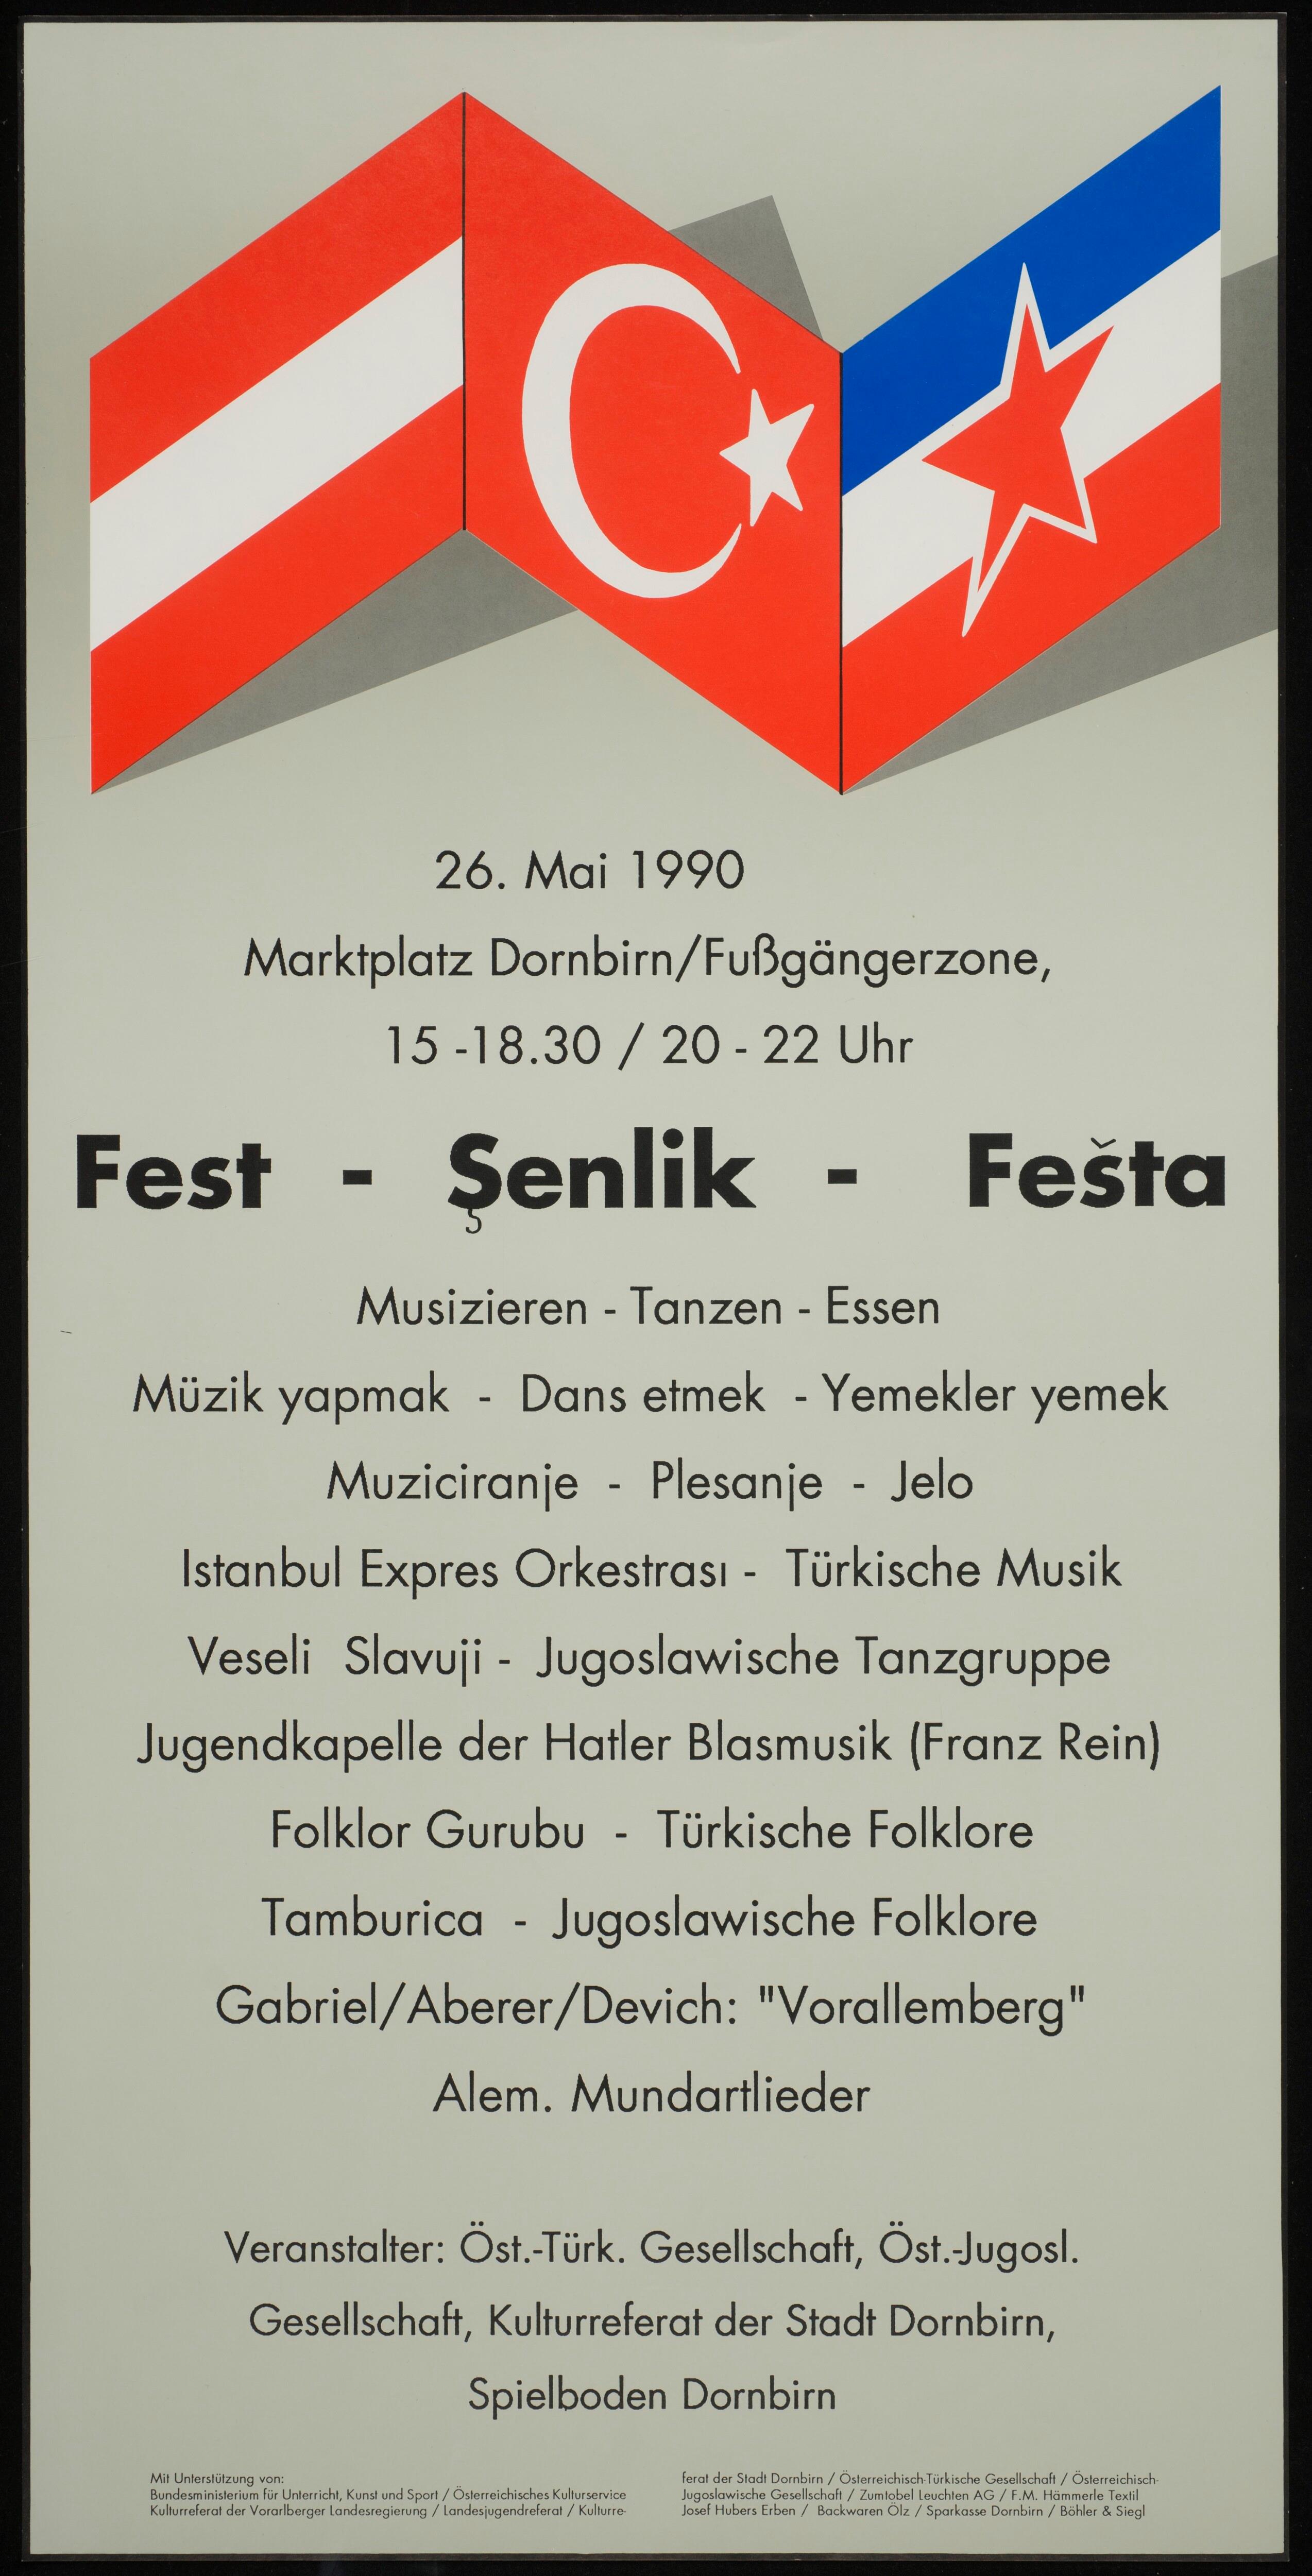 Fest - Senlik - Festa></div>


    <hr>
    <div class=